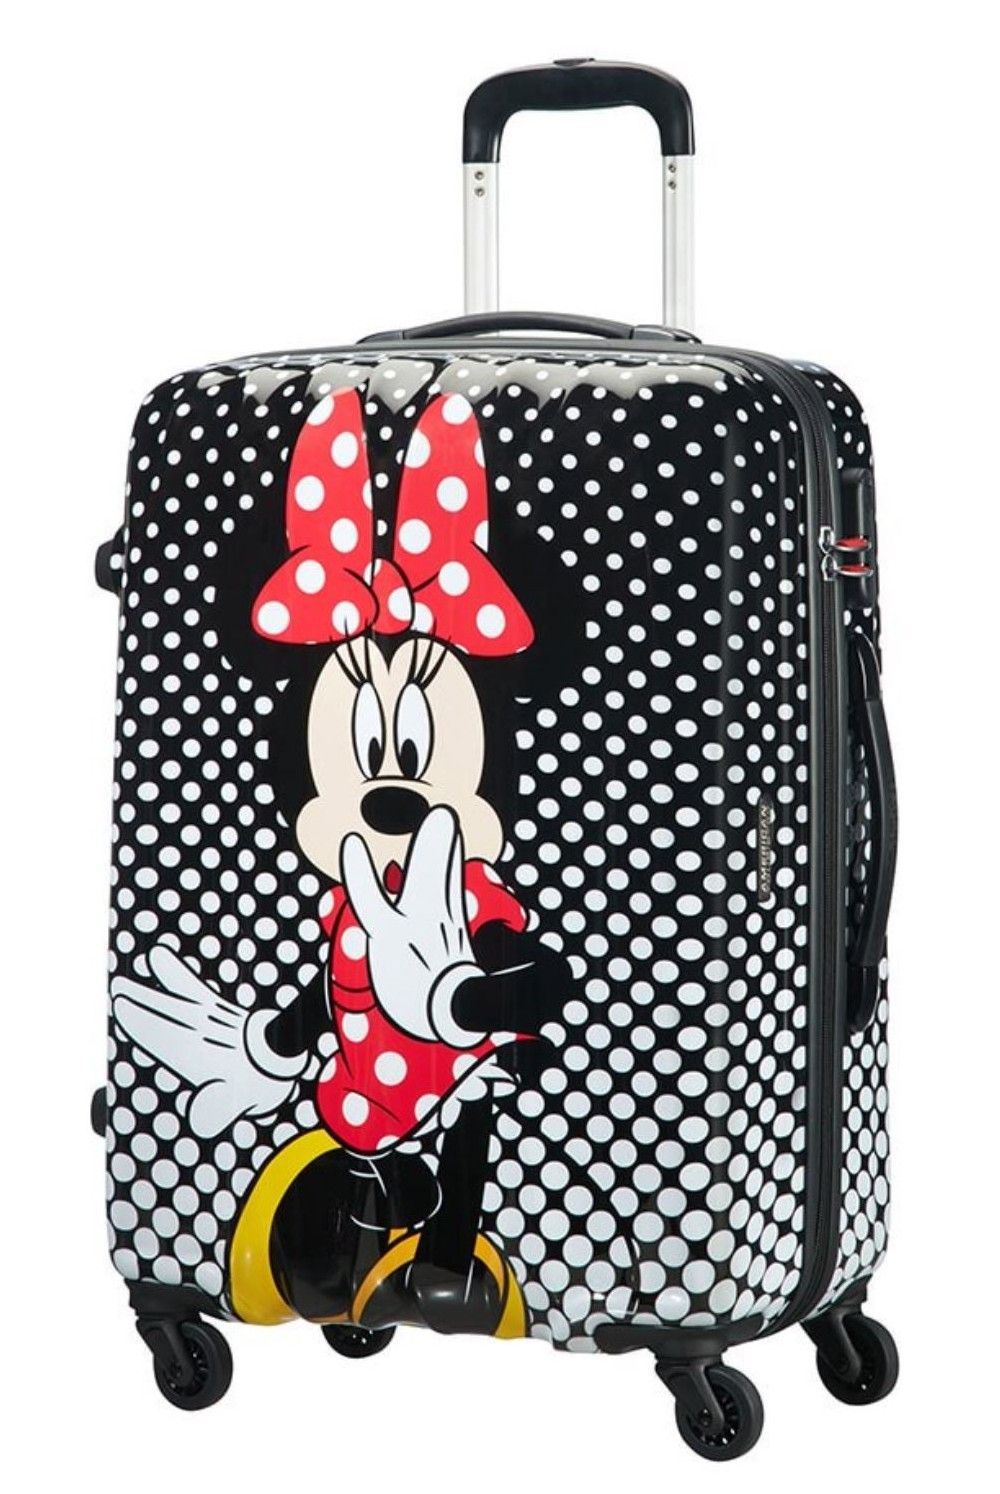 AT children's suitcase Minnie Polka Dot 65 cm 52 Liter